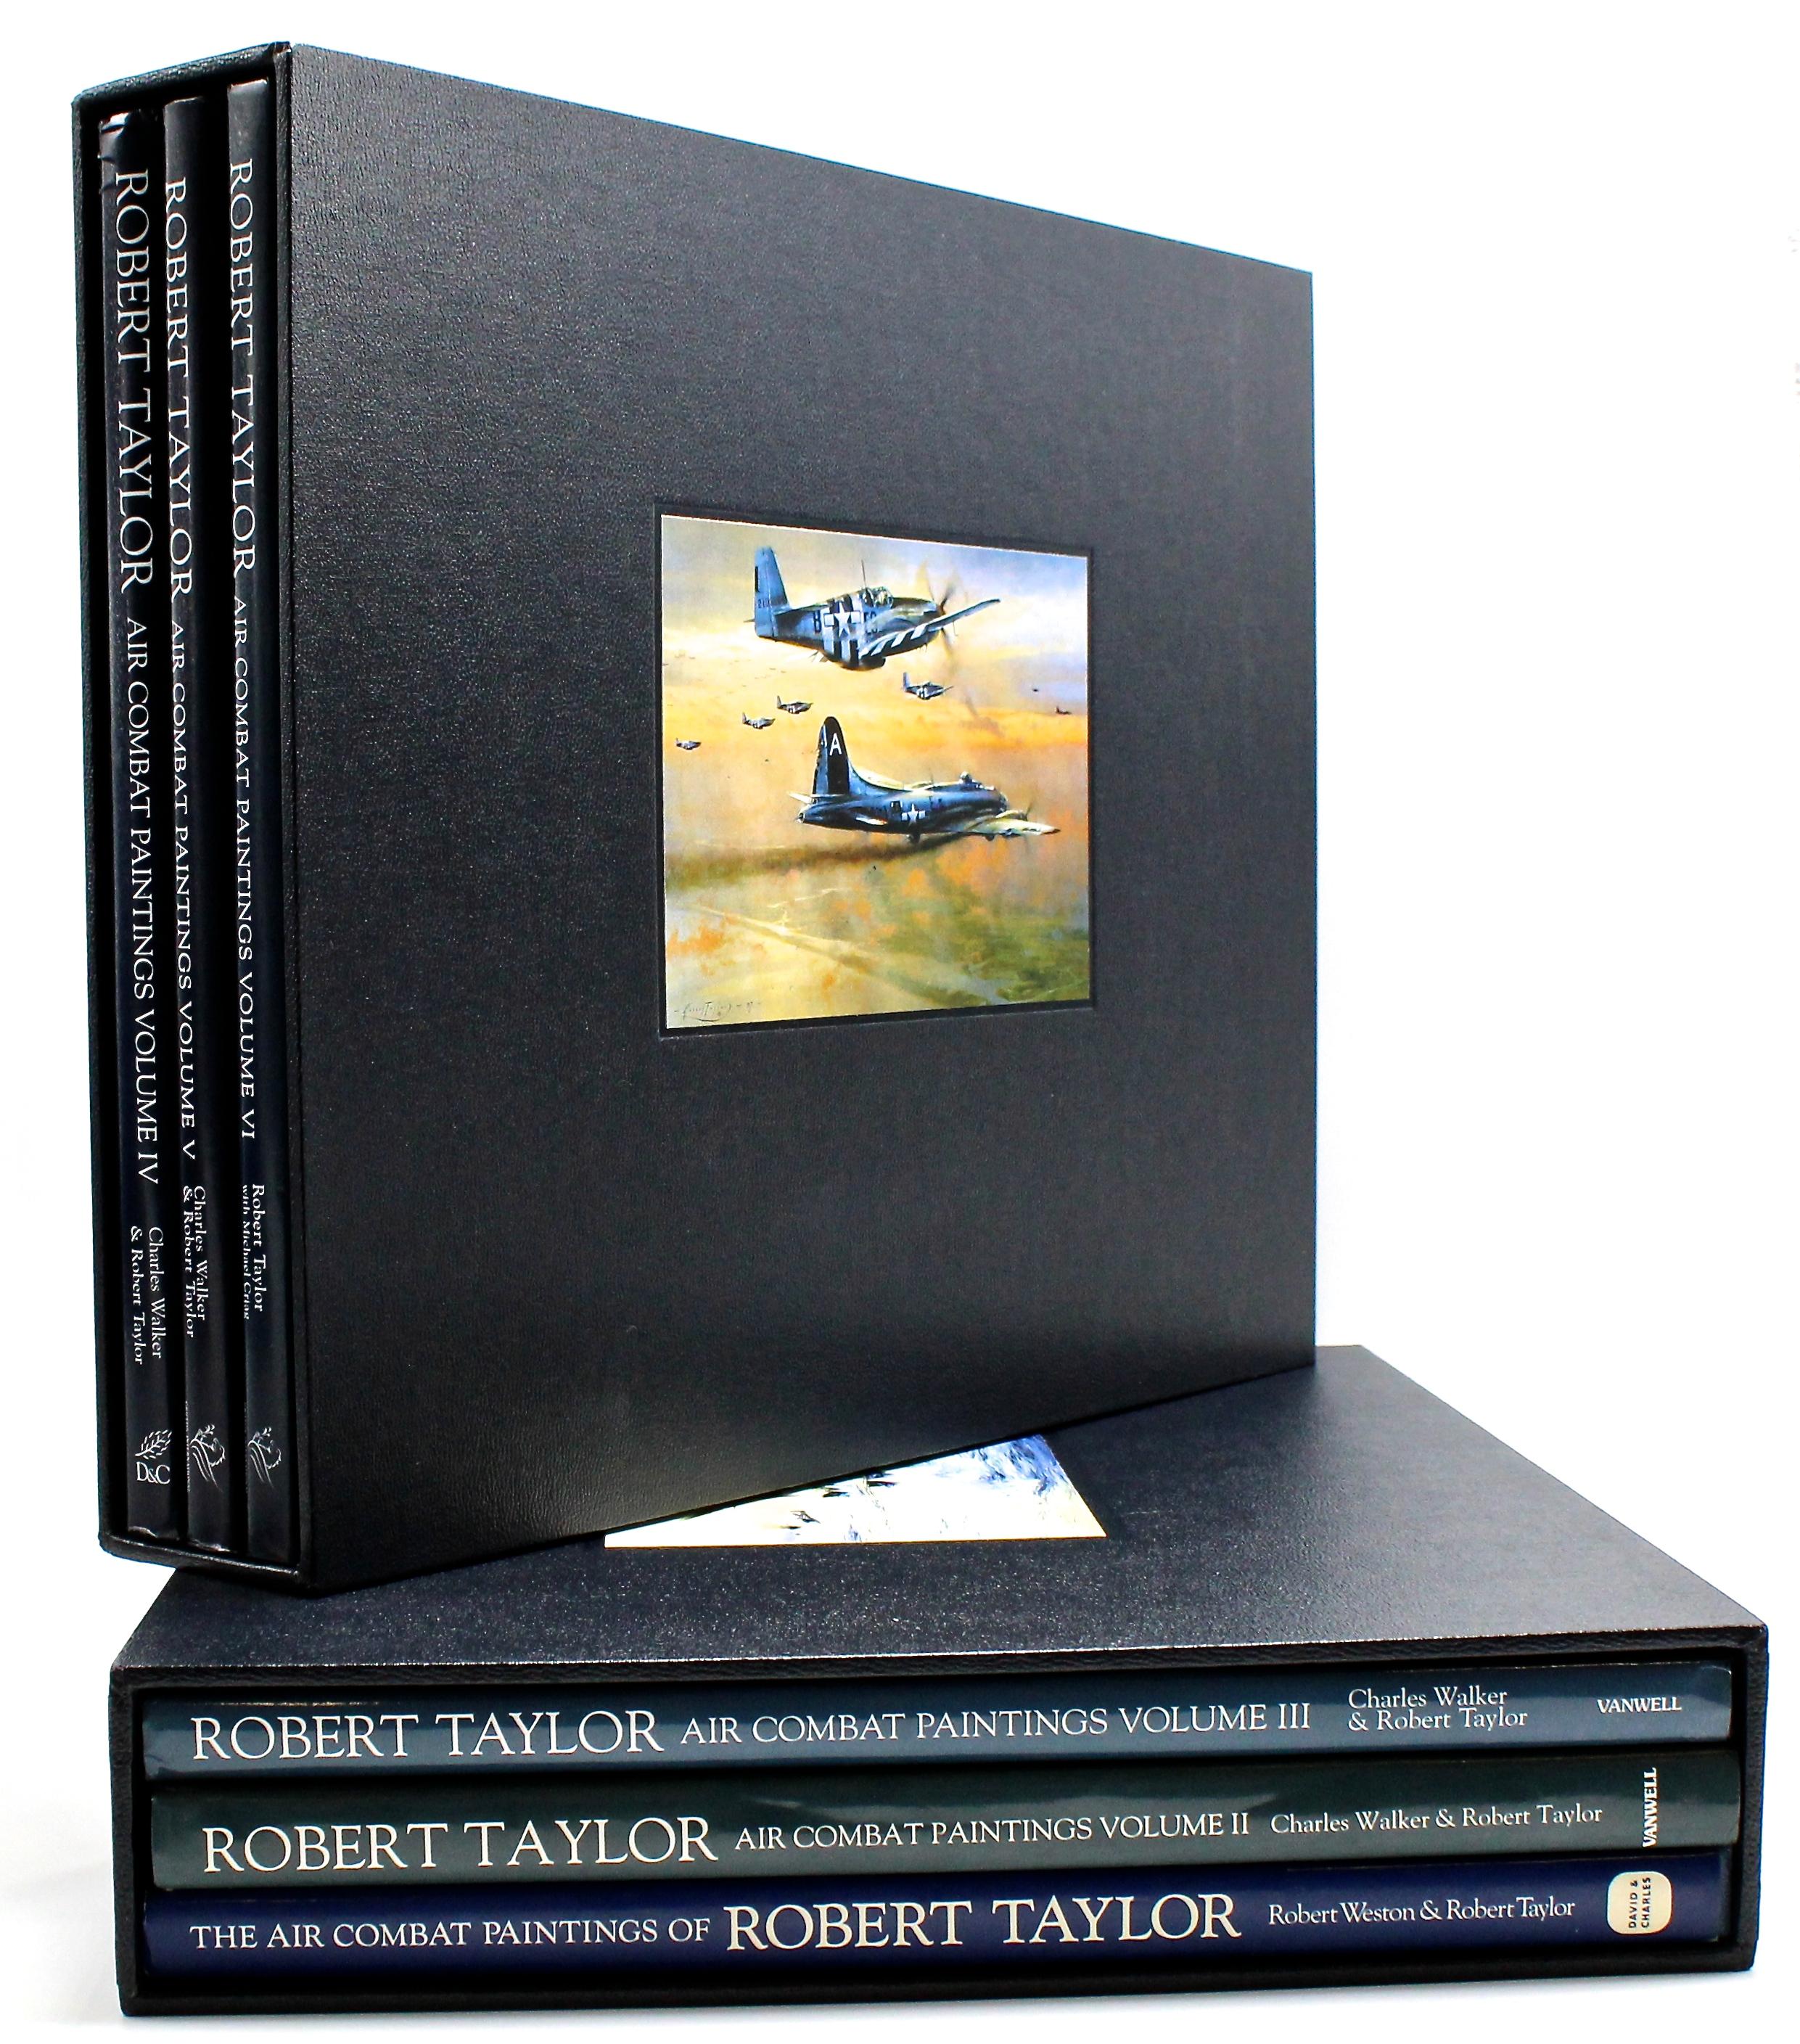 Taylor, Robert et Charles Walker. Les peintures de combat aérien de Robert Taylor. Publié de 1990 à 2009 par divers éditeurs. Ensemble en six volumes signé et inscrit deux fois par Taylor et signé par 51 pilotes de chasse. Présentés dans des étuis